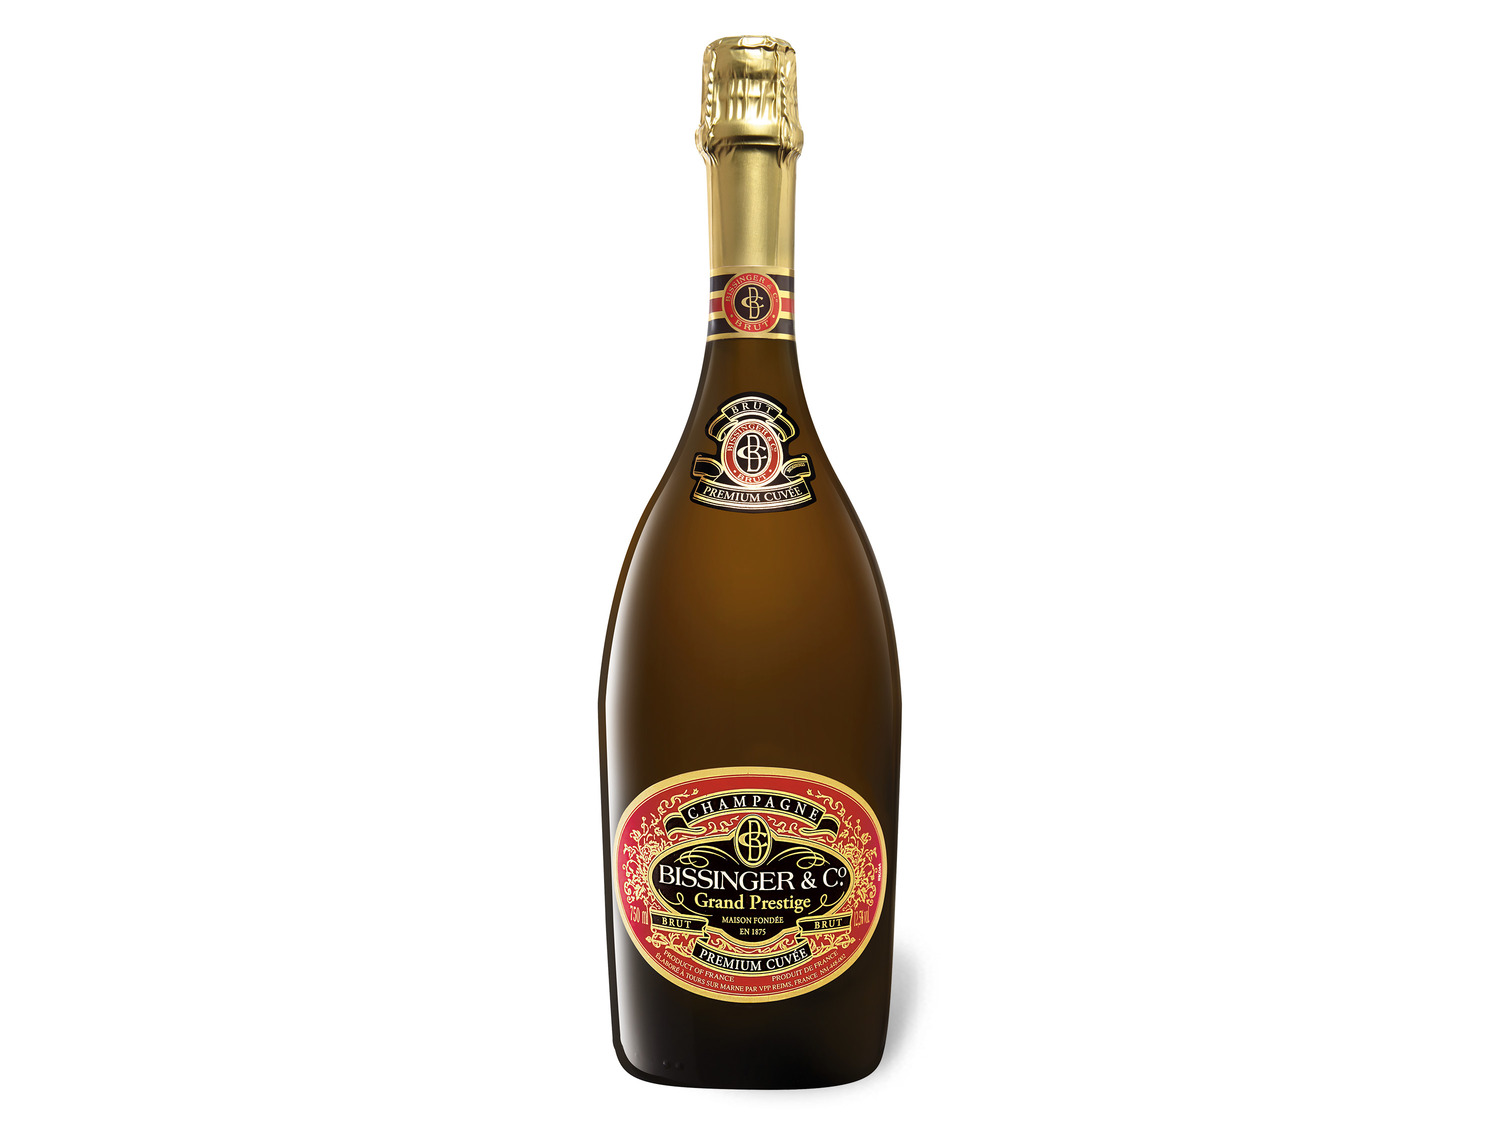 Bissinger Grand Prestige Premium brut, Cuvée Champagner